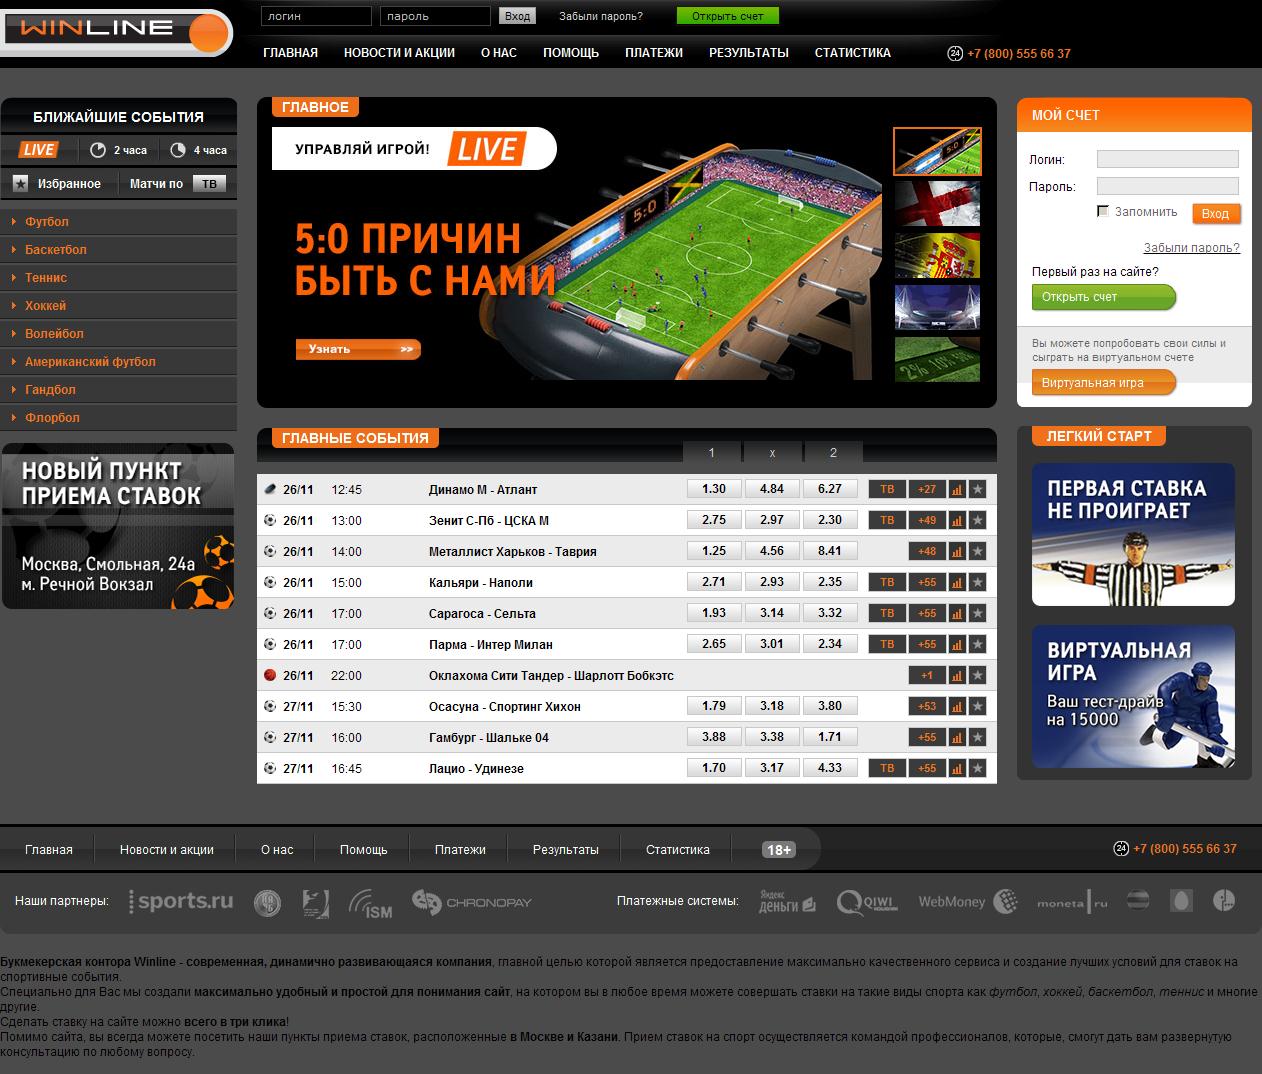 Ставки на спорт как играть правильно научиться казино онлайн азарт плей мобильная версия зеркало